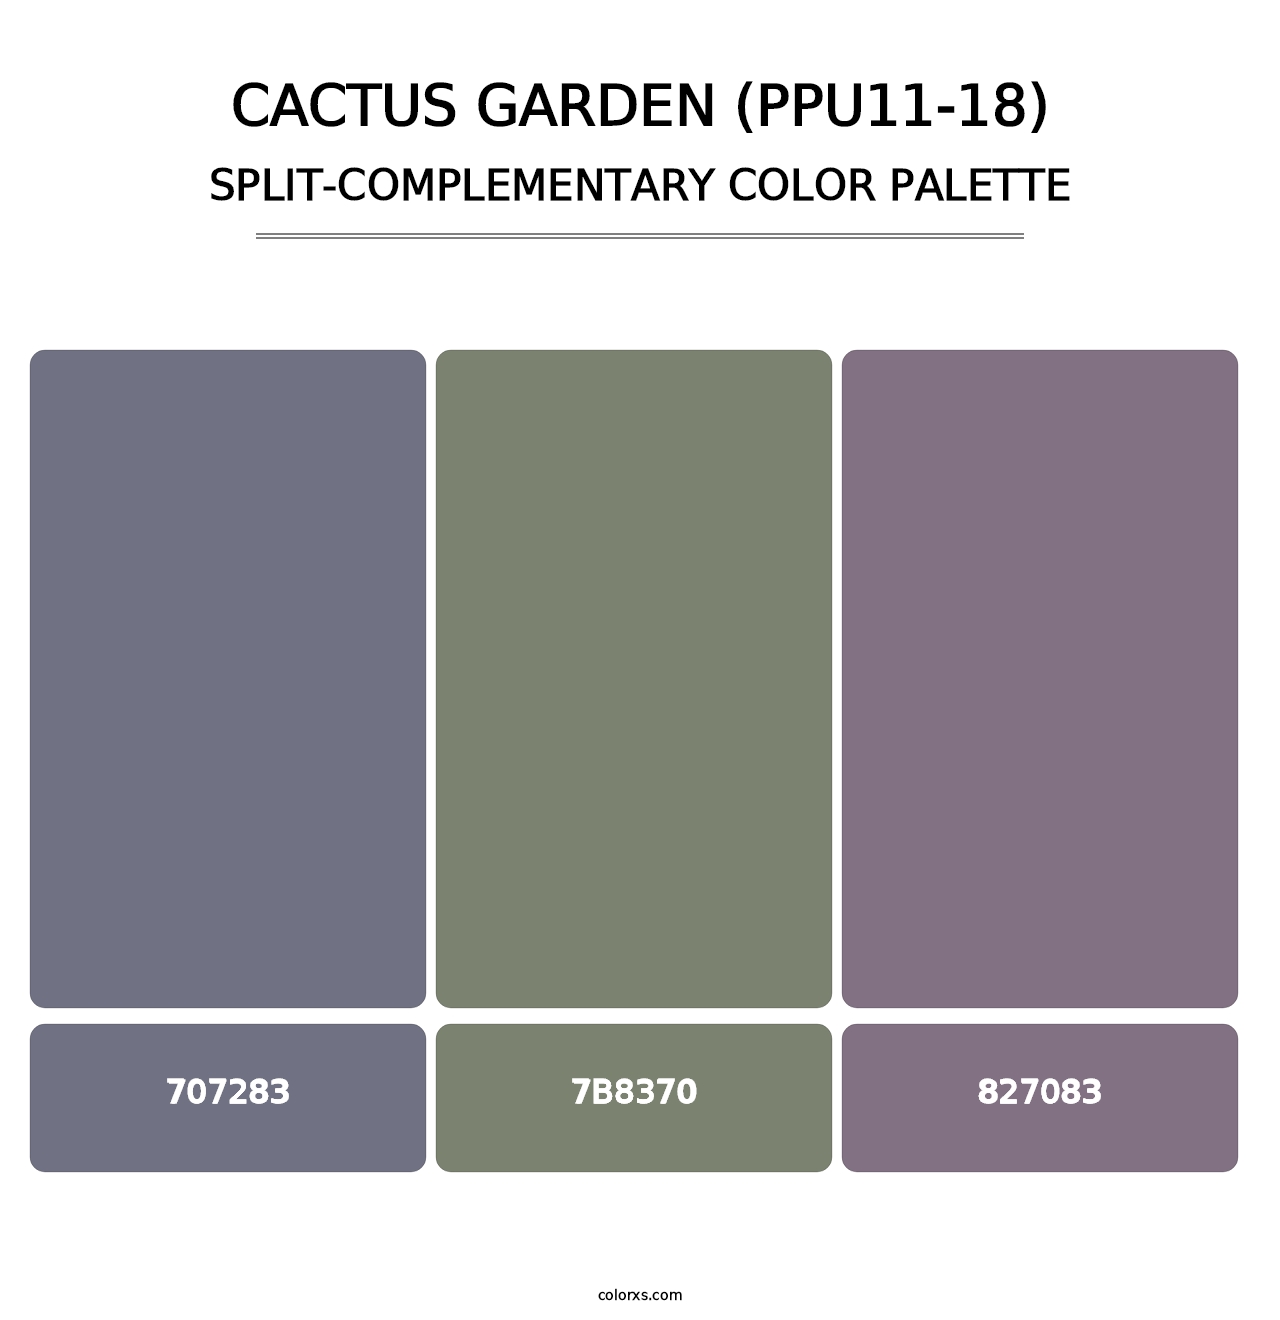 Cactus Garden (PPU11-18) - Split-Complementary Color Palette